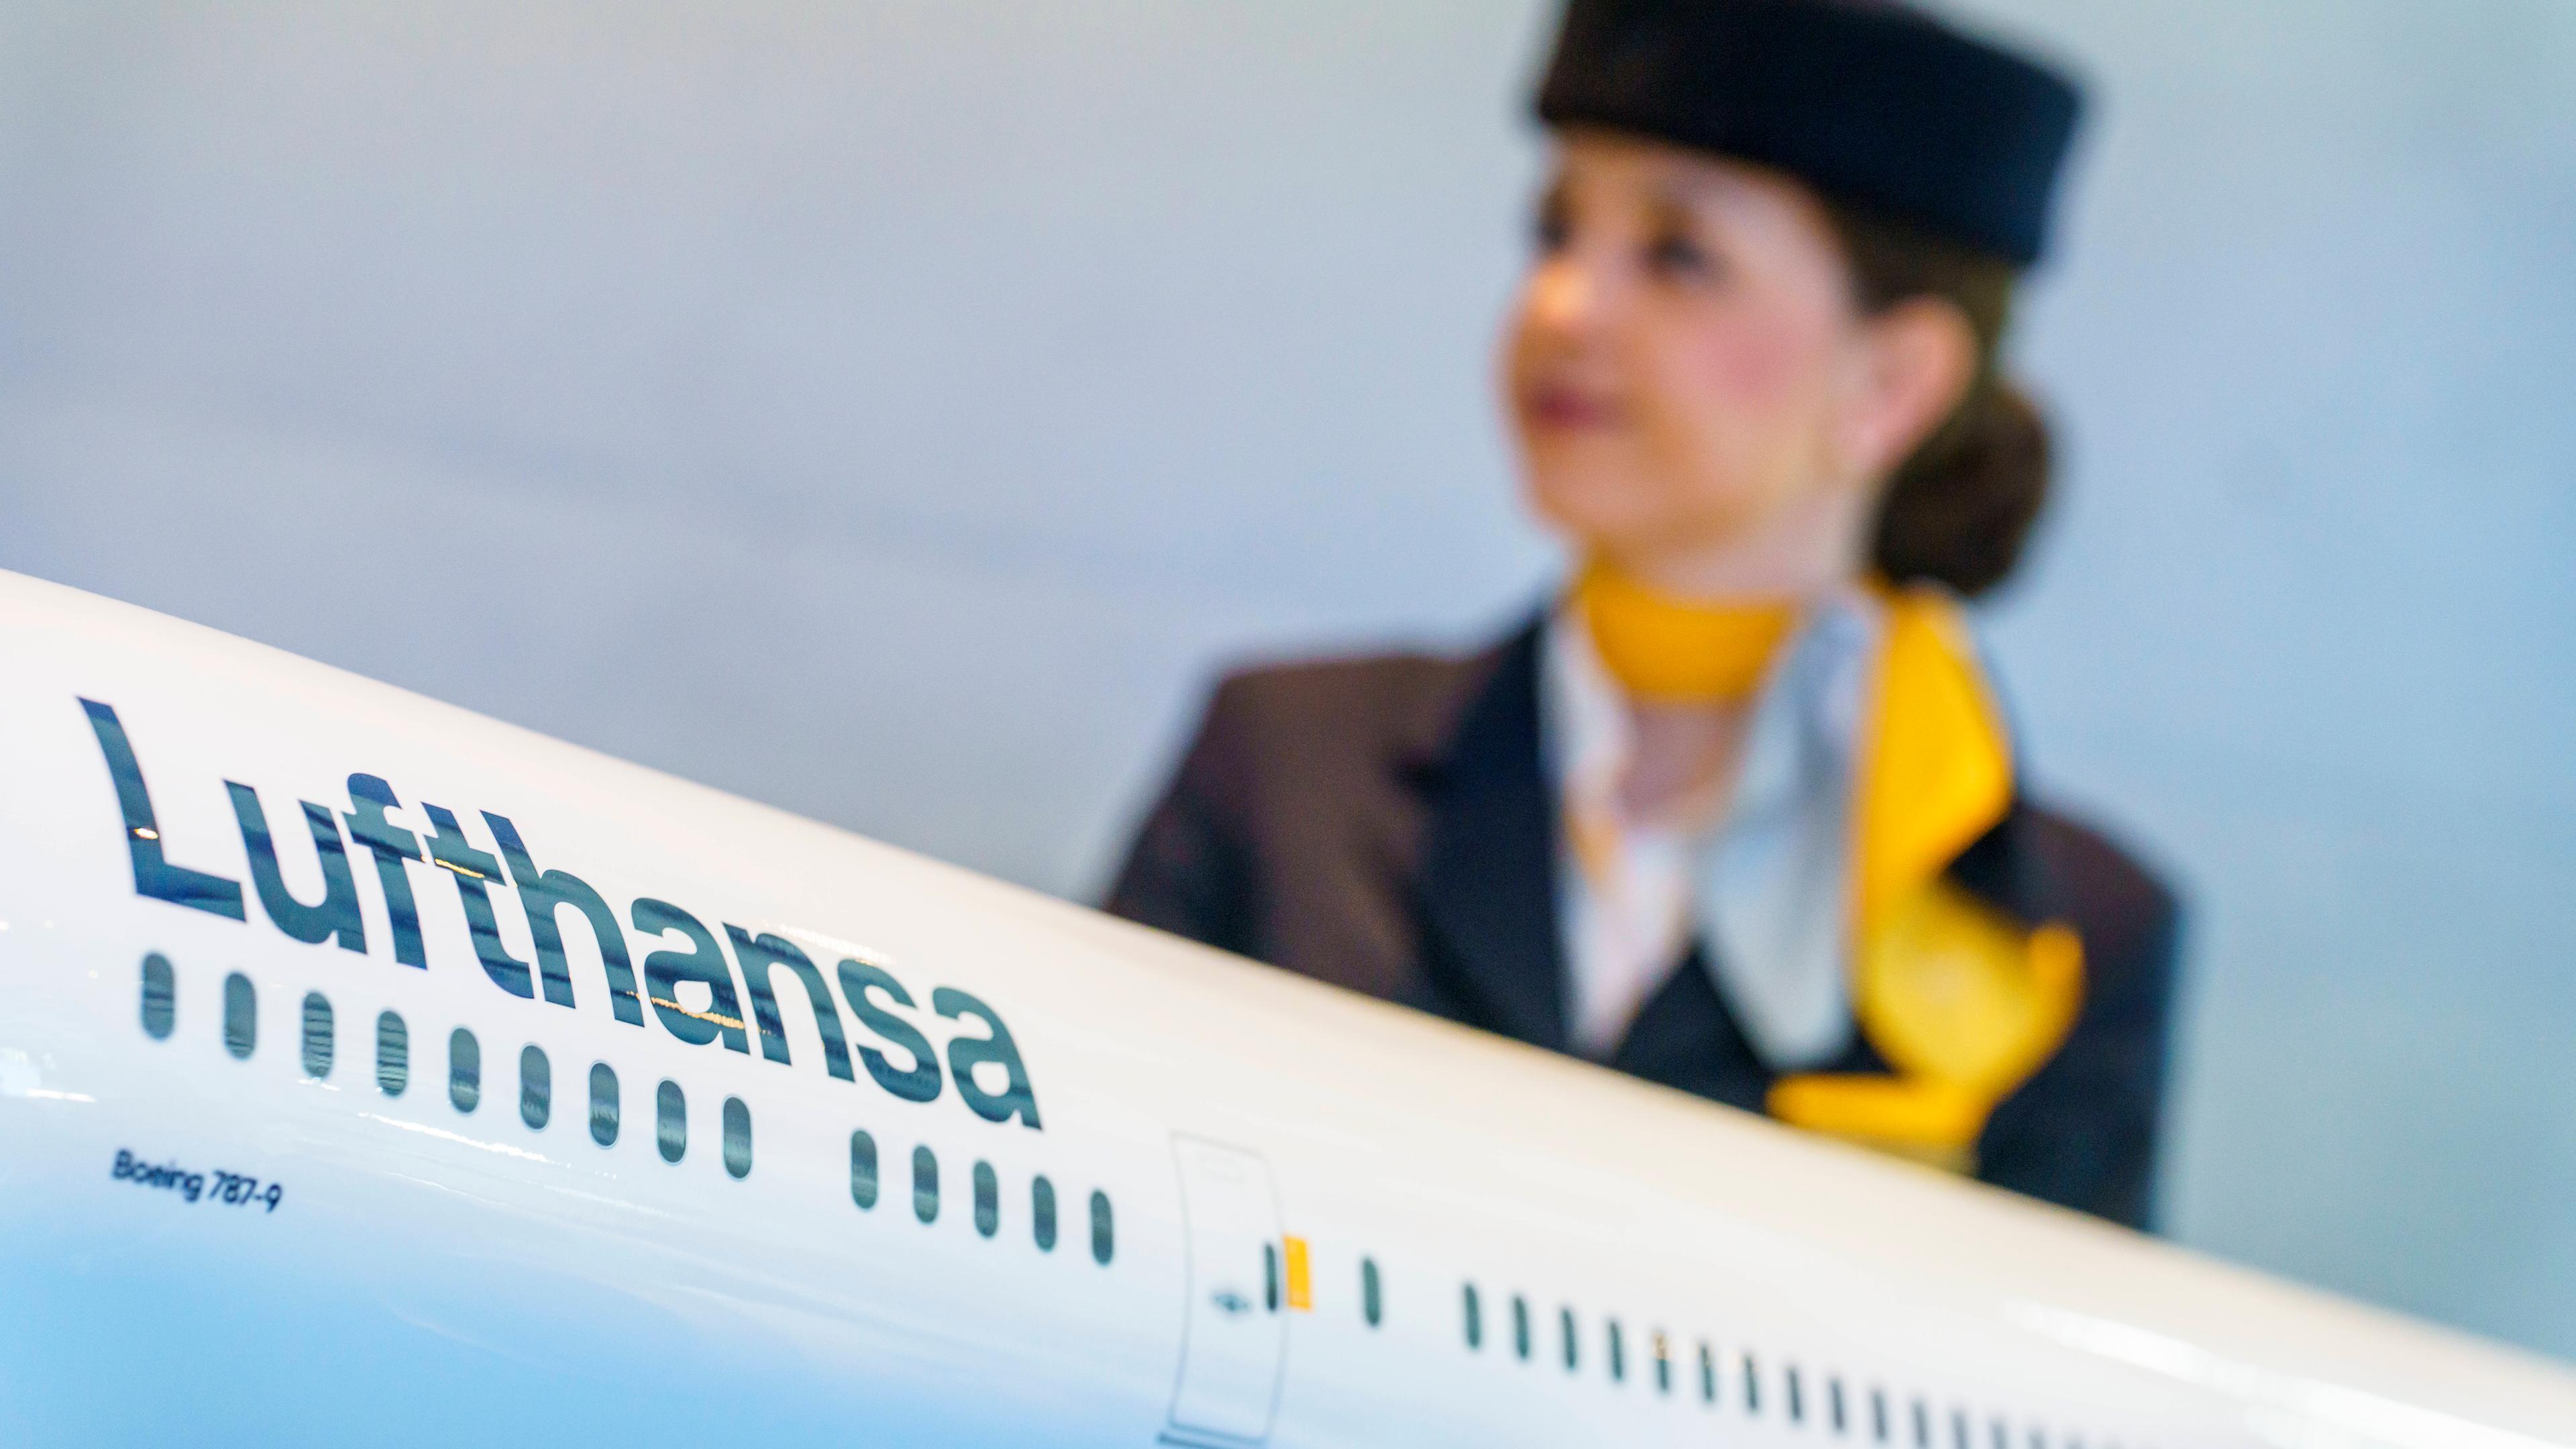 Eine Flugbegleiterin steht hinter einem Modell einer Lufthansamaschine.